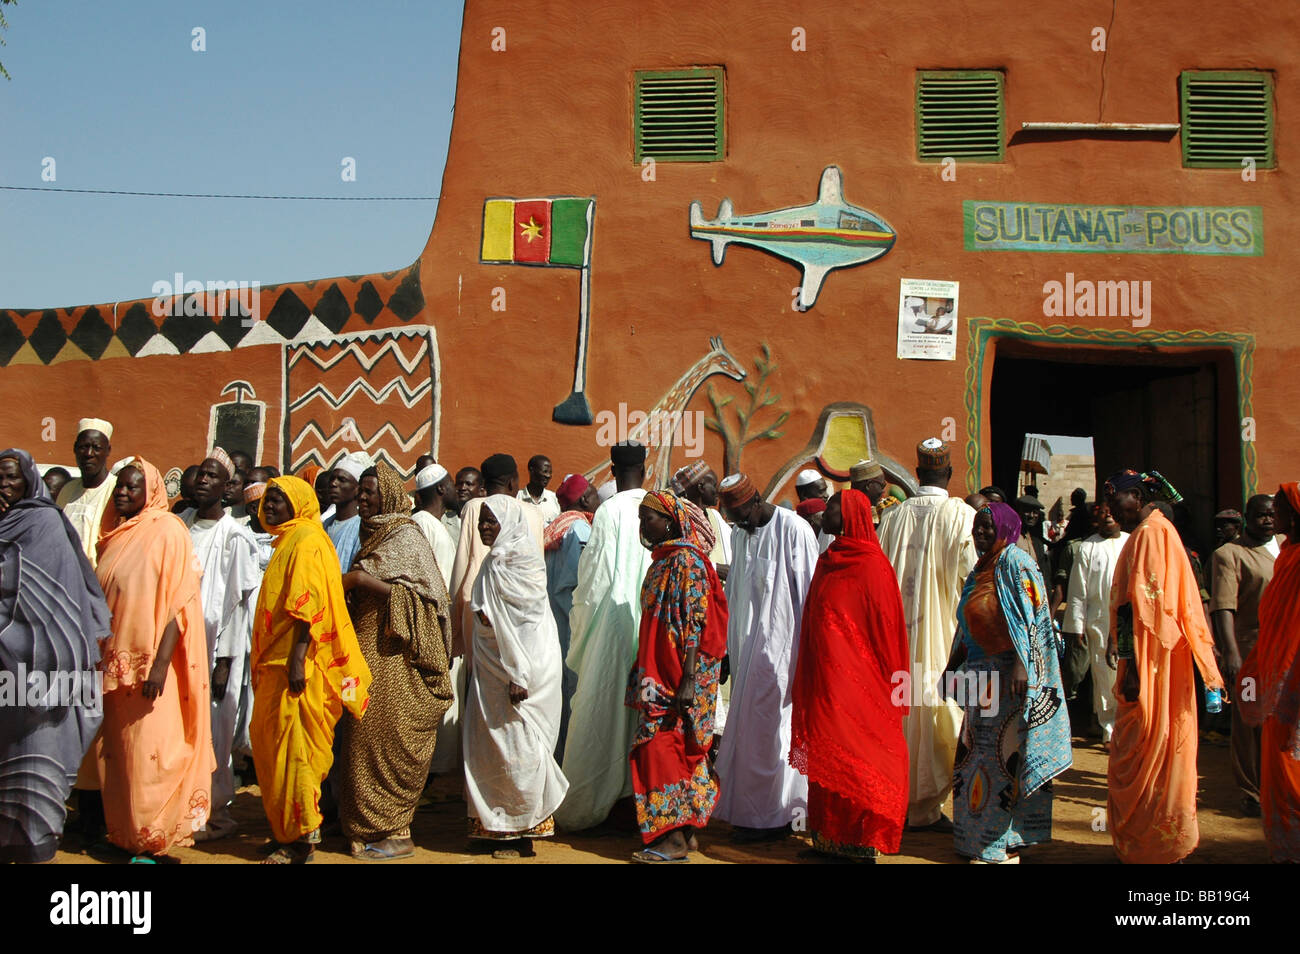 Cameroun, Pouss. Rassemblement de couleurs hommes & femmes africaines traditionnelles locales et dans des tenues colorées pour une celebrationPouss Banque D'Images